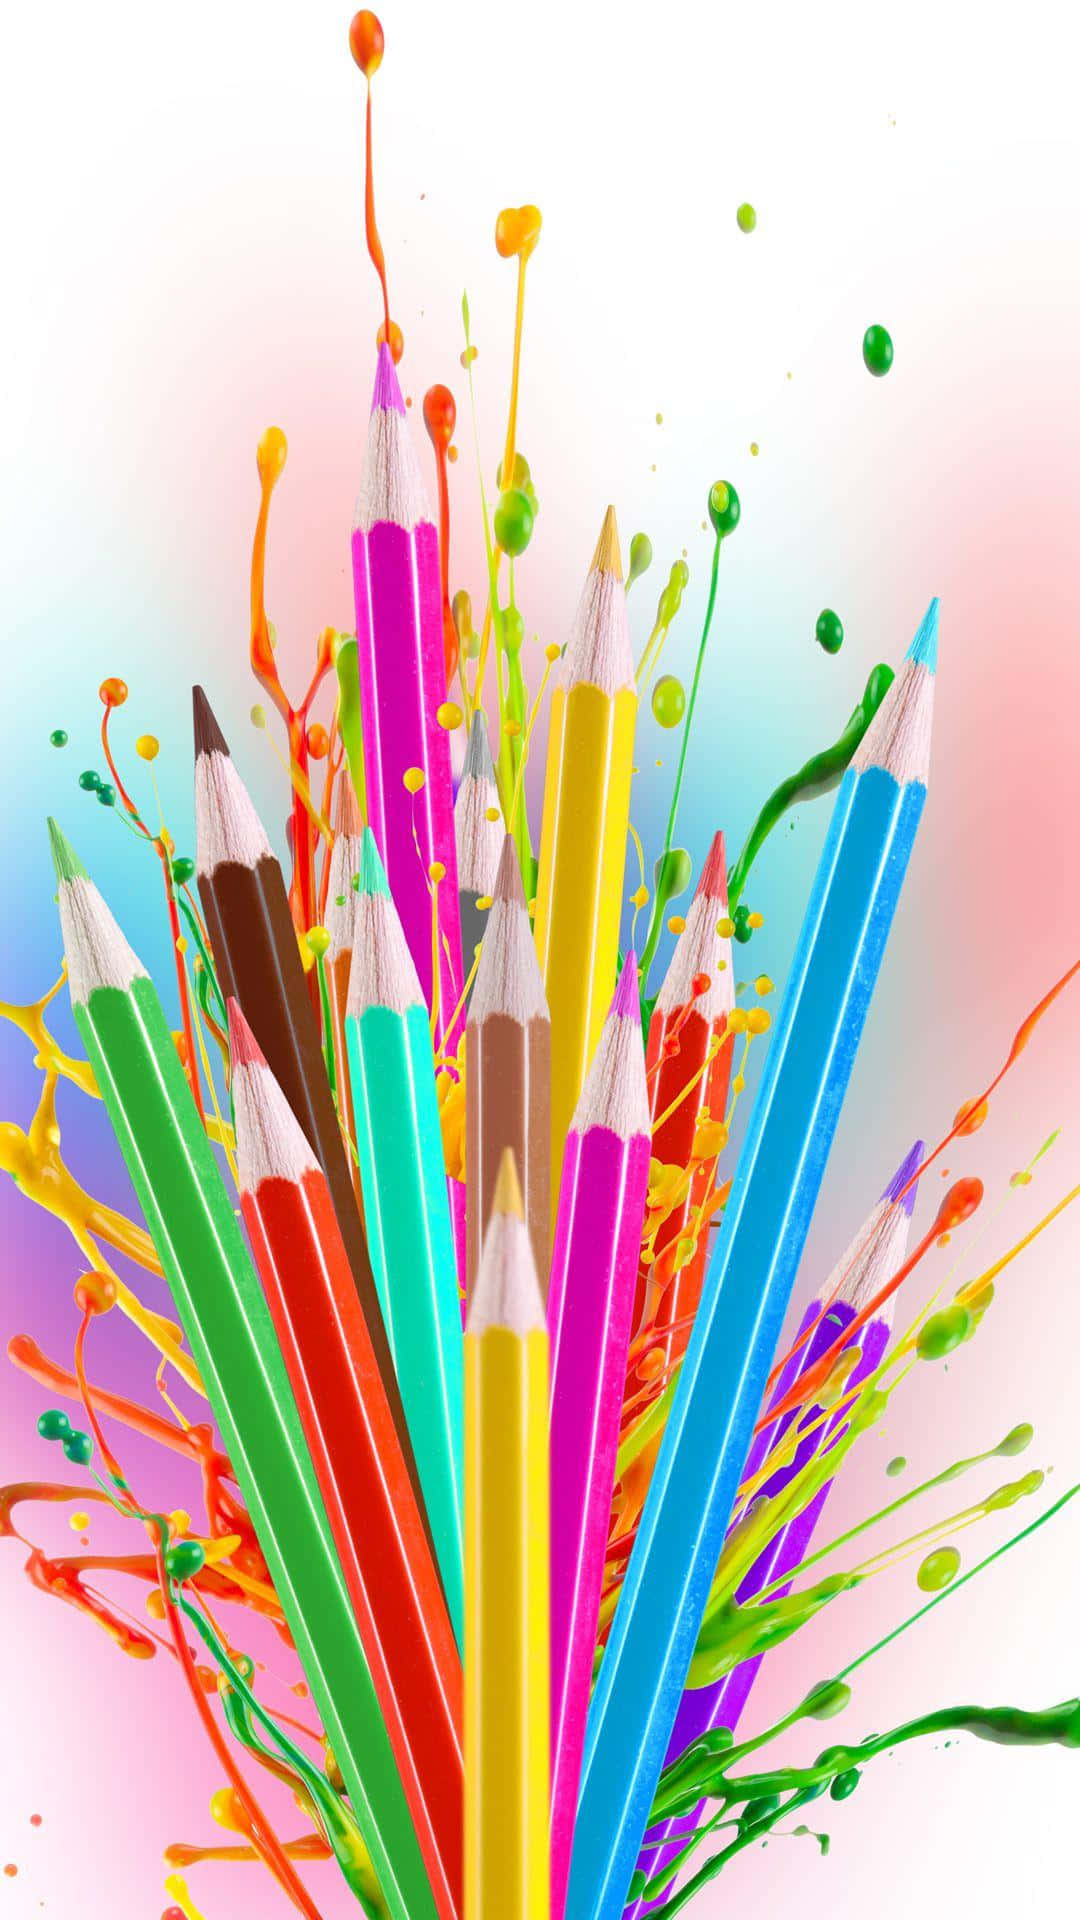 Espectrode Crayón: Un Fondo Vibrante